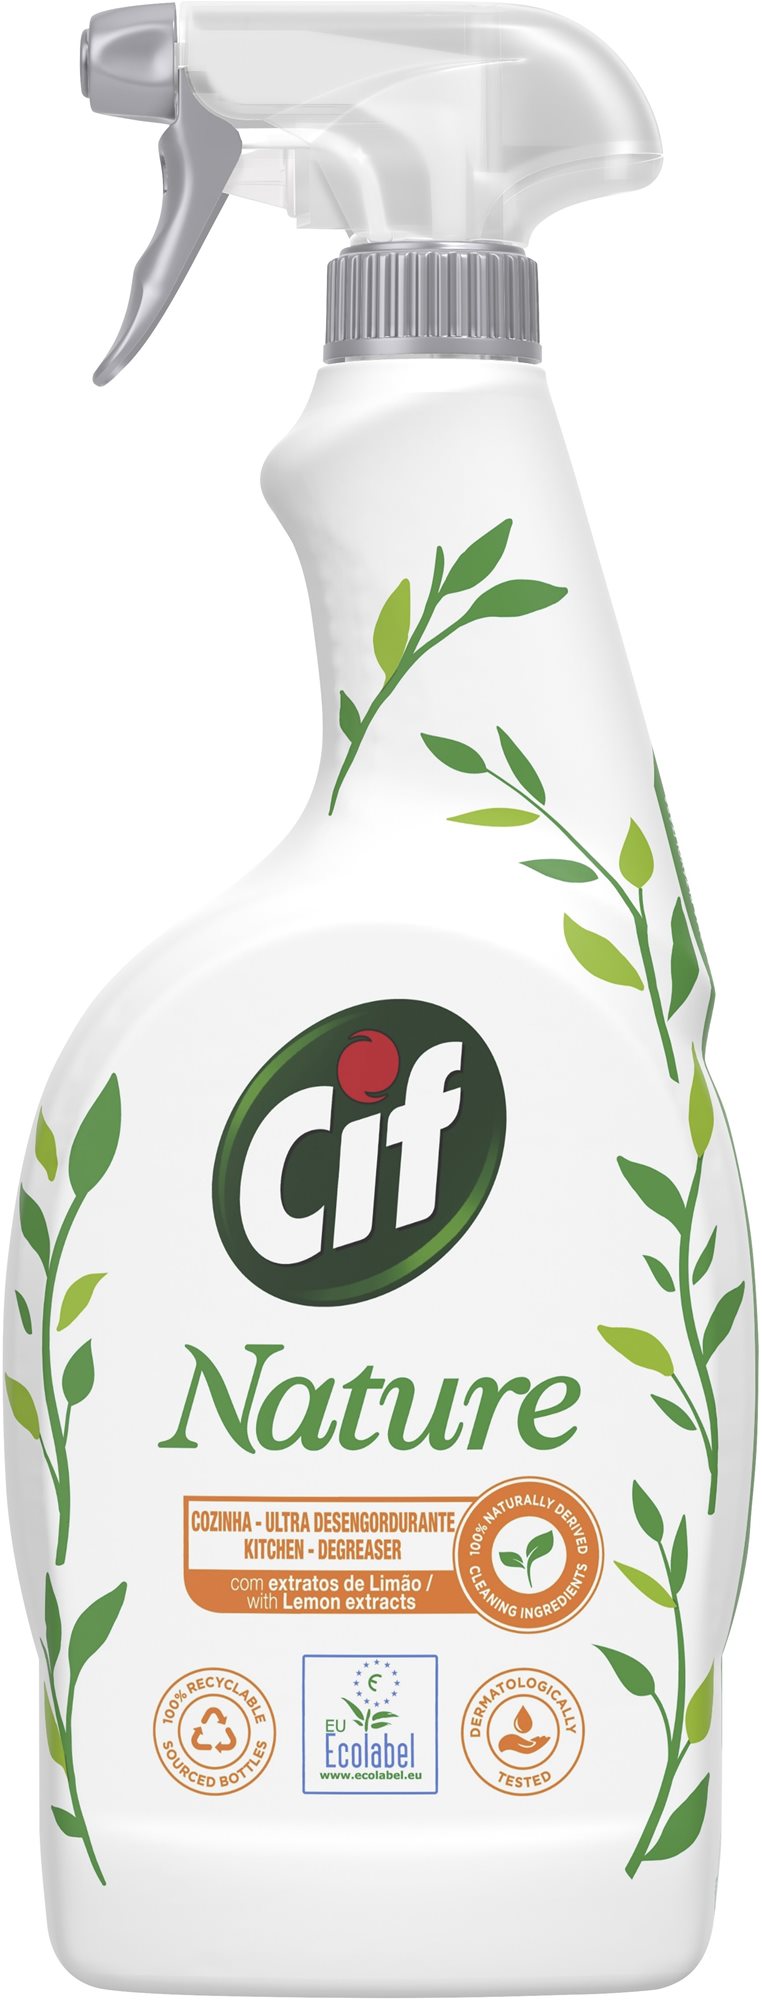 Környezetbarát tisztítószer CIF Nature konyhai tisztítószer 750 ml